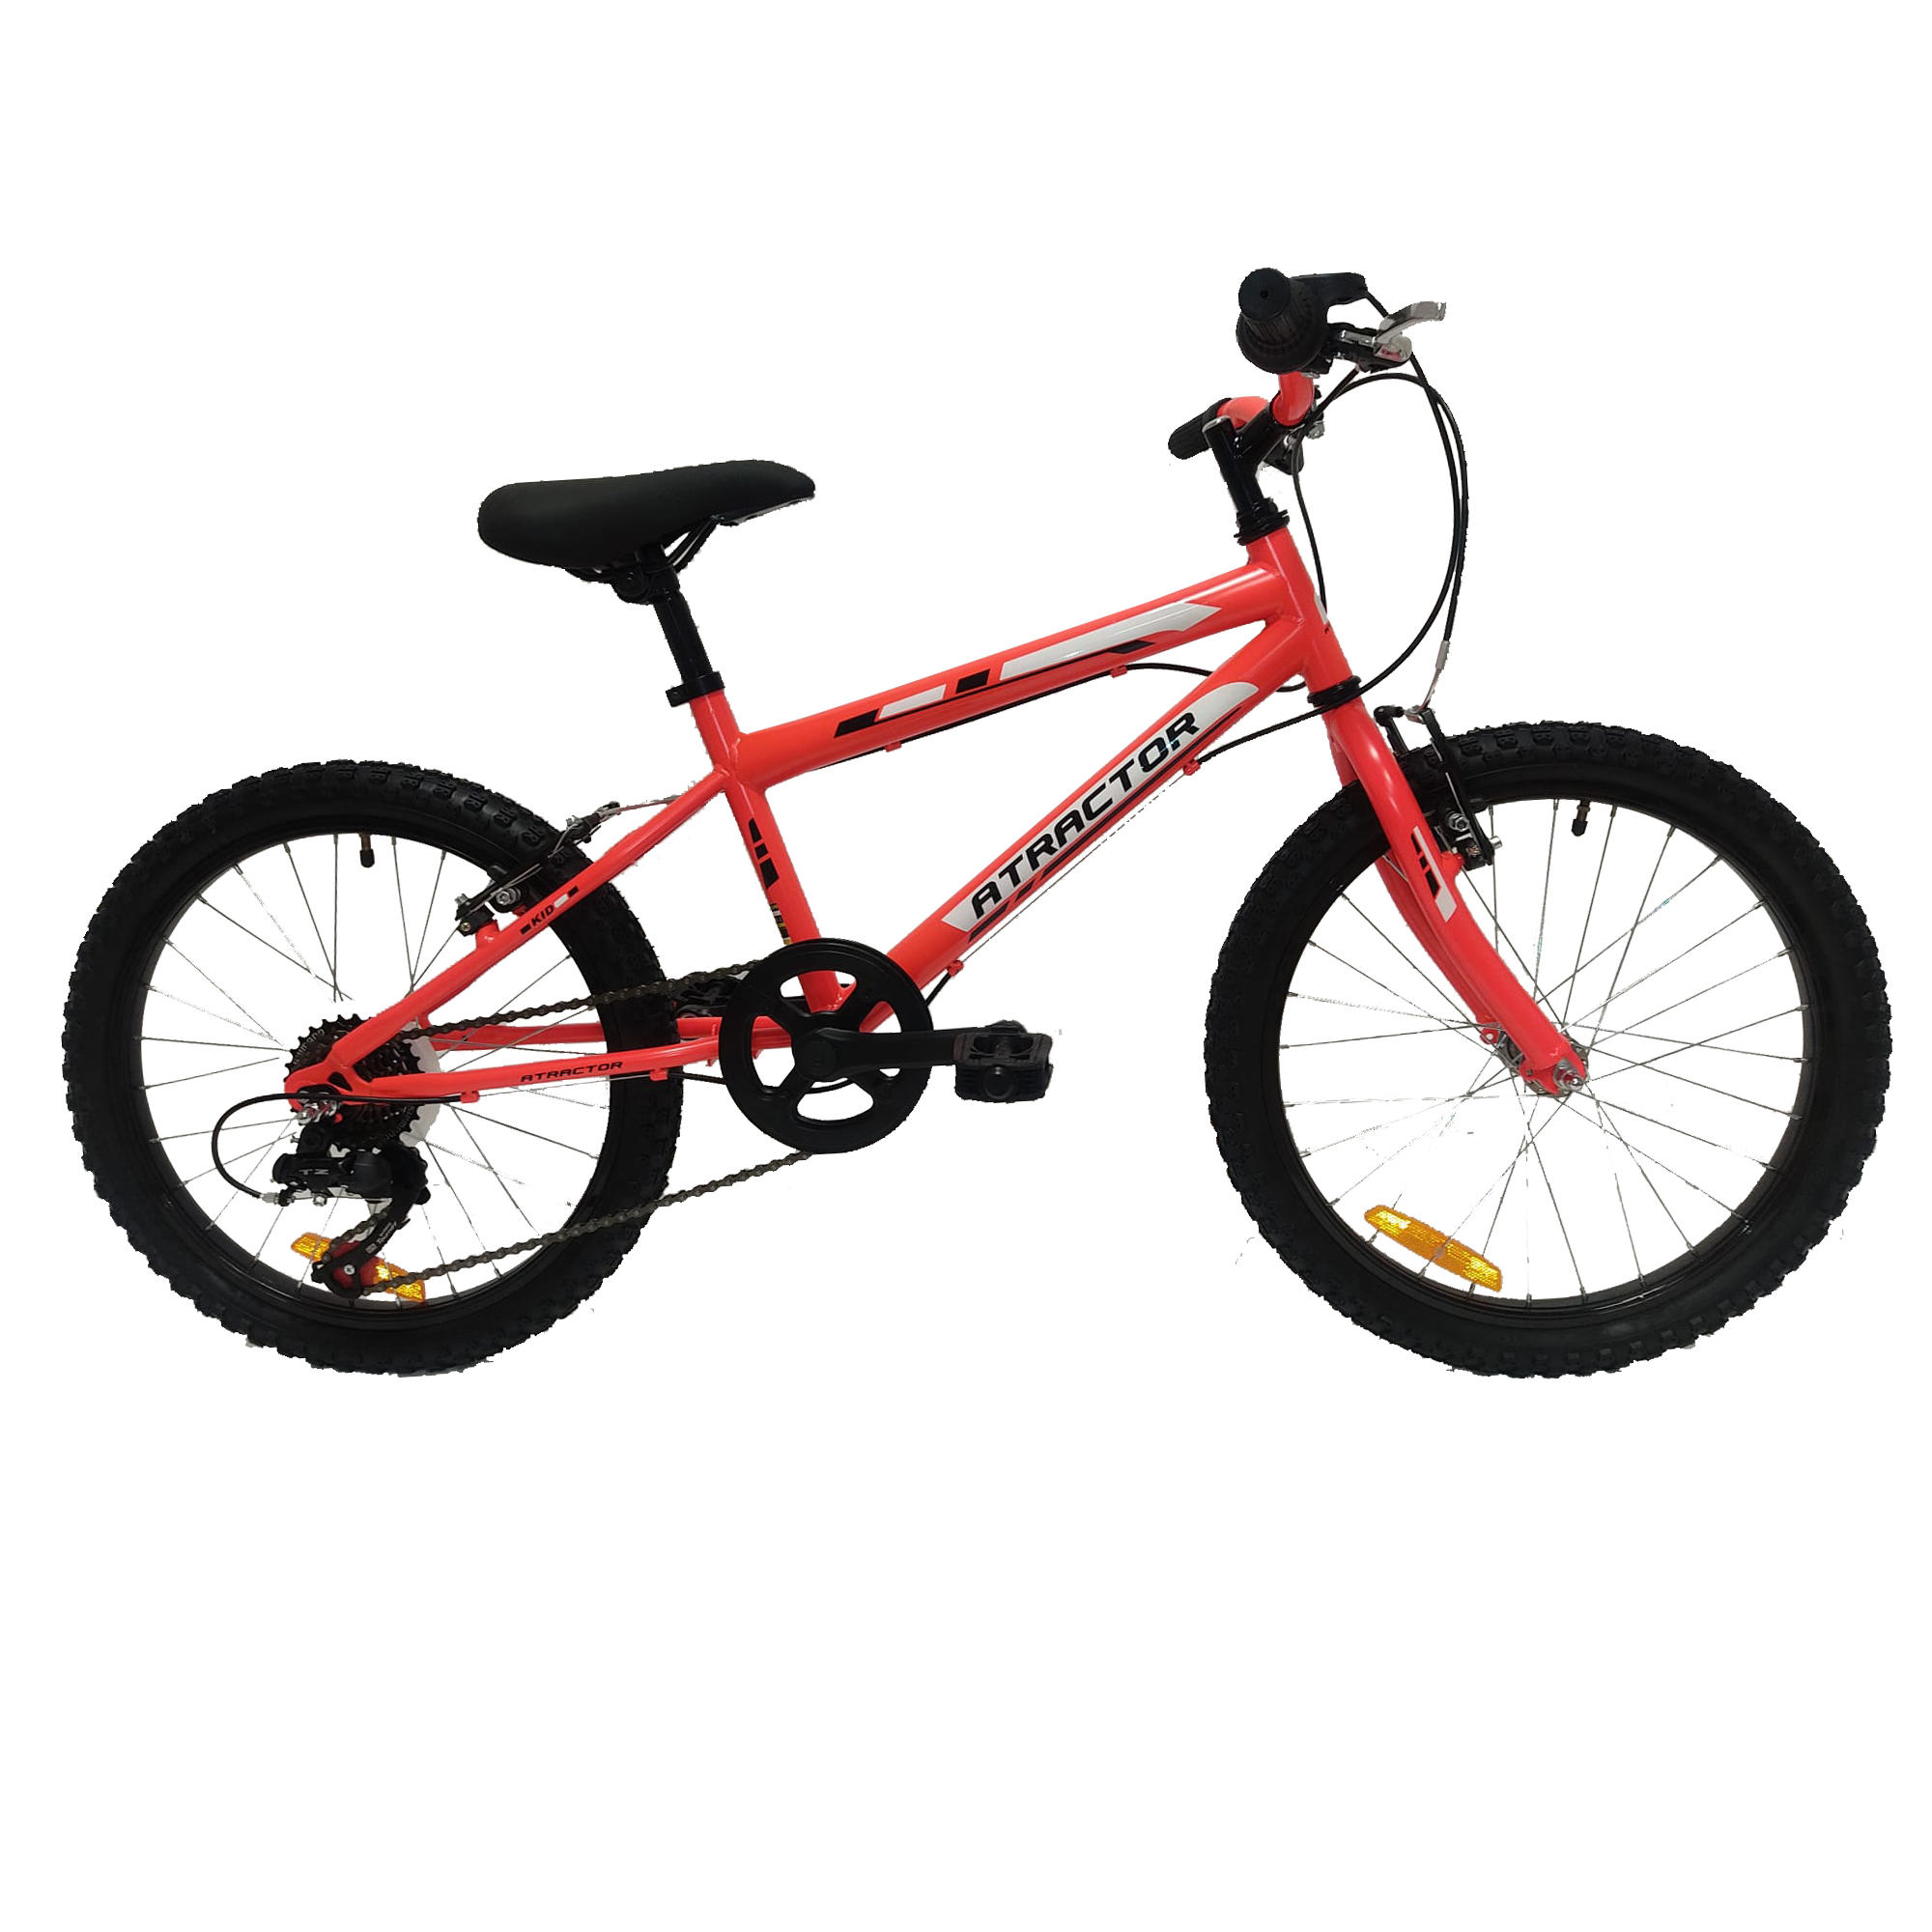 Bicicleta de montaña niños 20 pulgadas Atractor Shomano 7V naranja 6-9 años